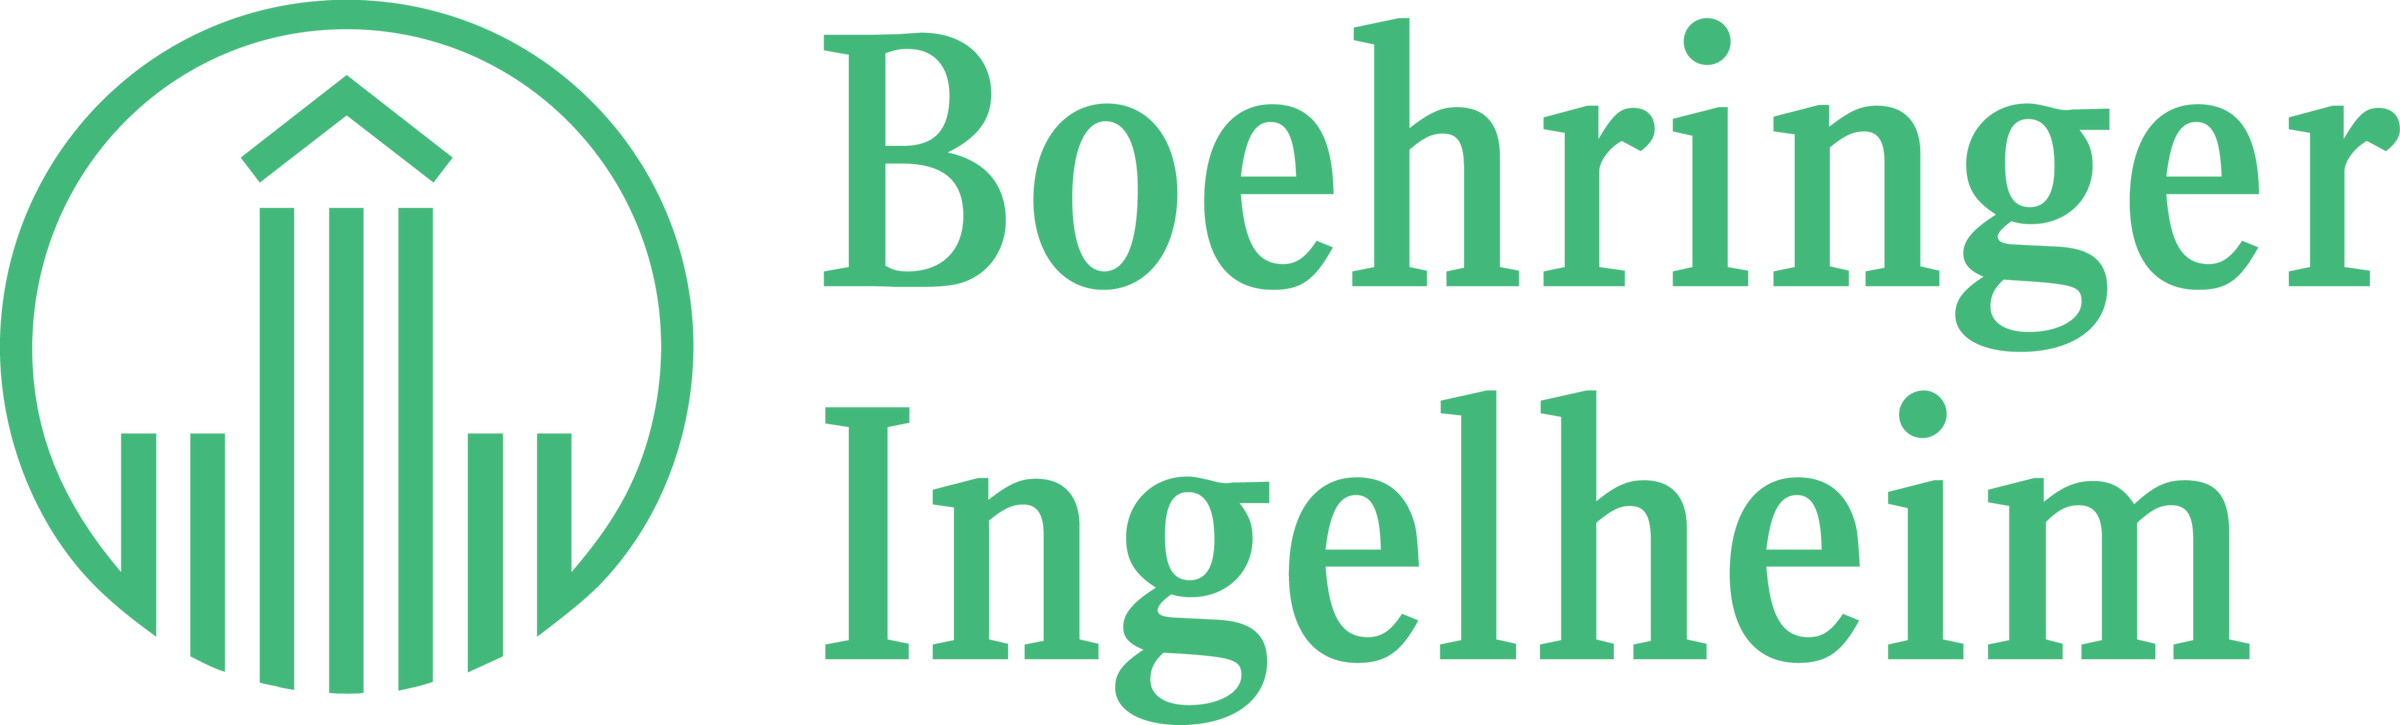 Boehringer Ingelheim Logo Light Green